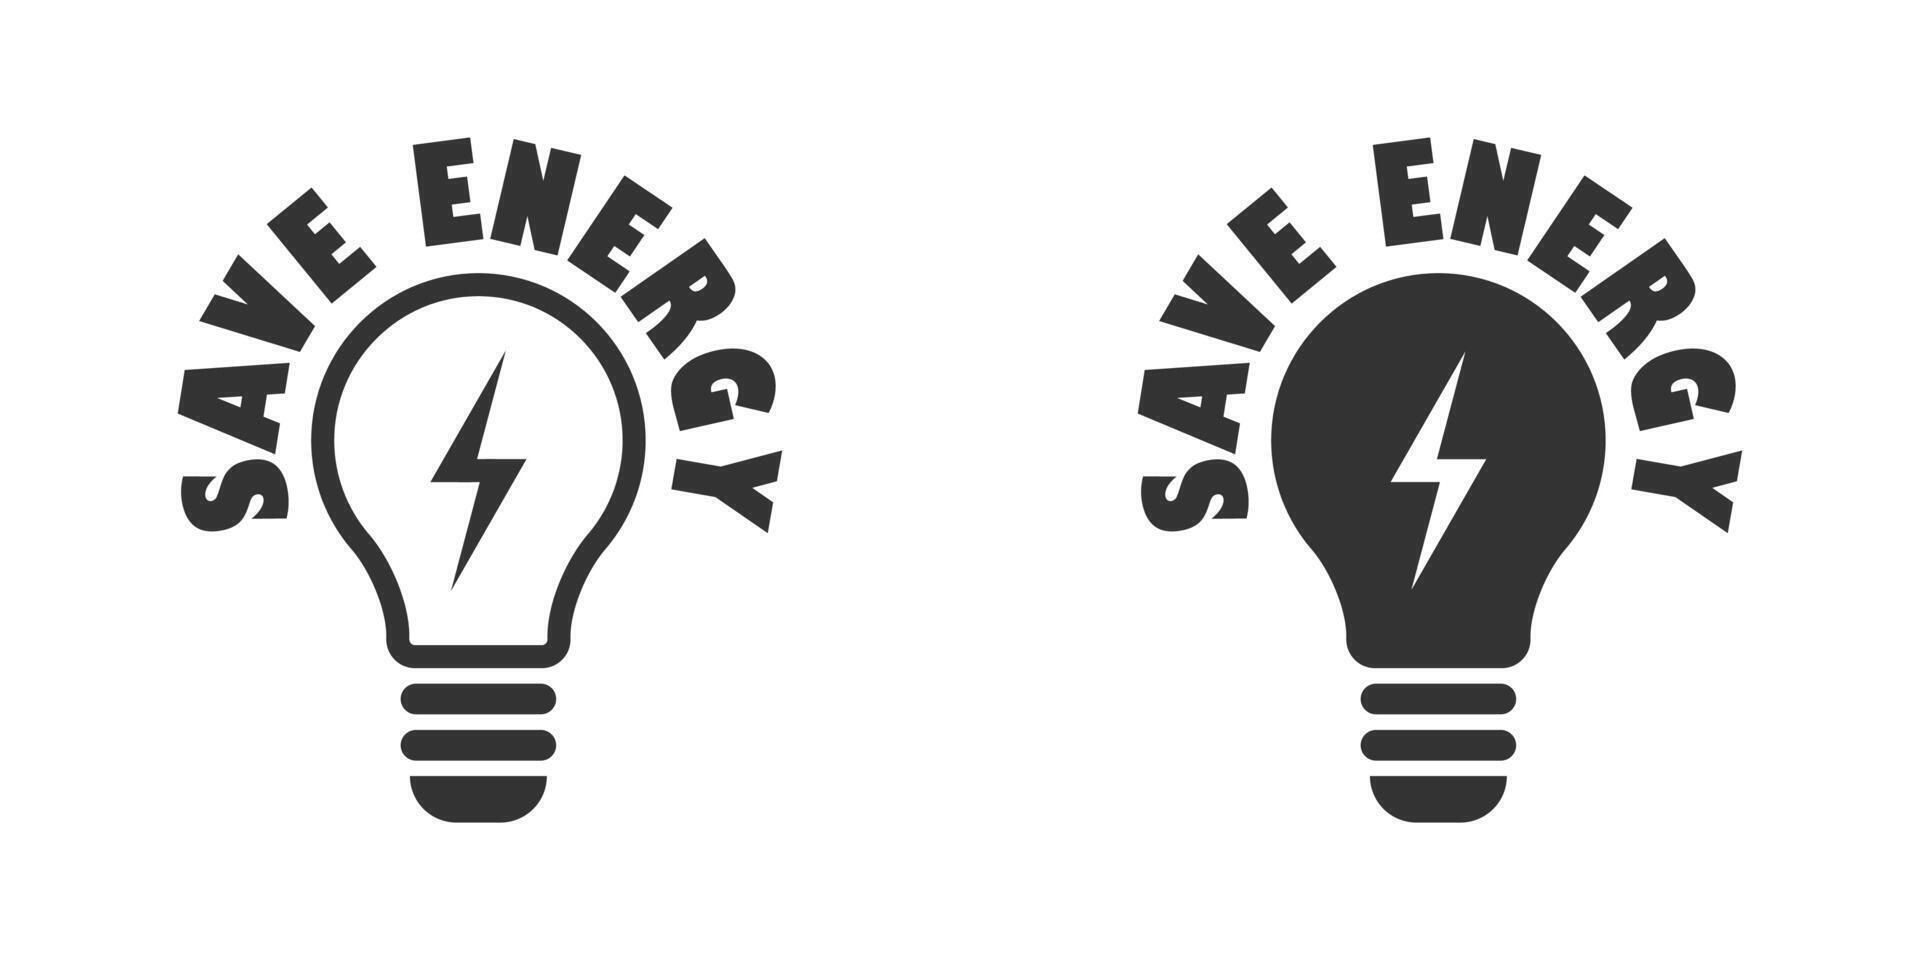 spara energi ikon. Glödlampa med blixt- symbol inuti och text. vektor illustration.